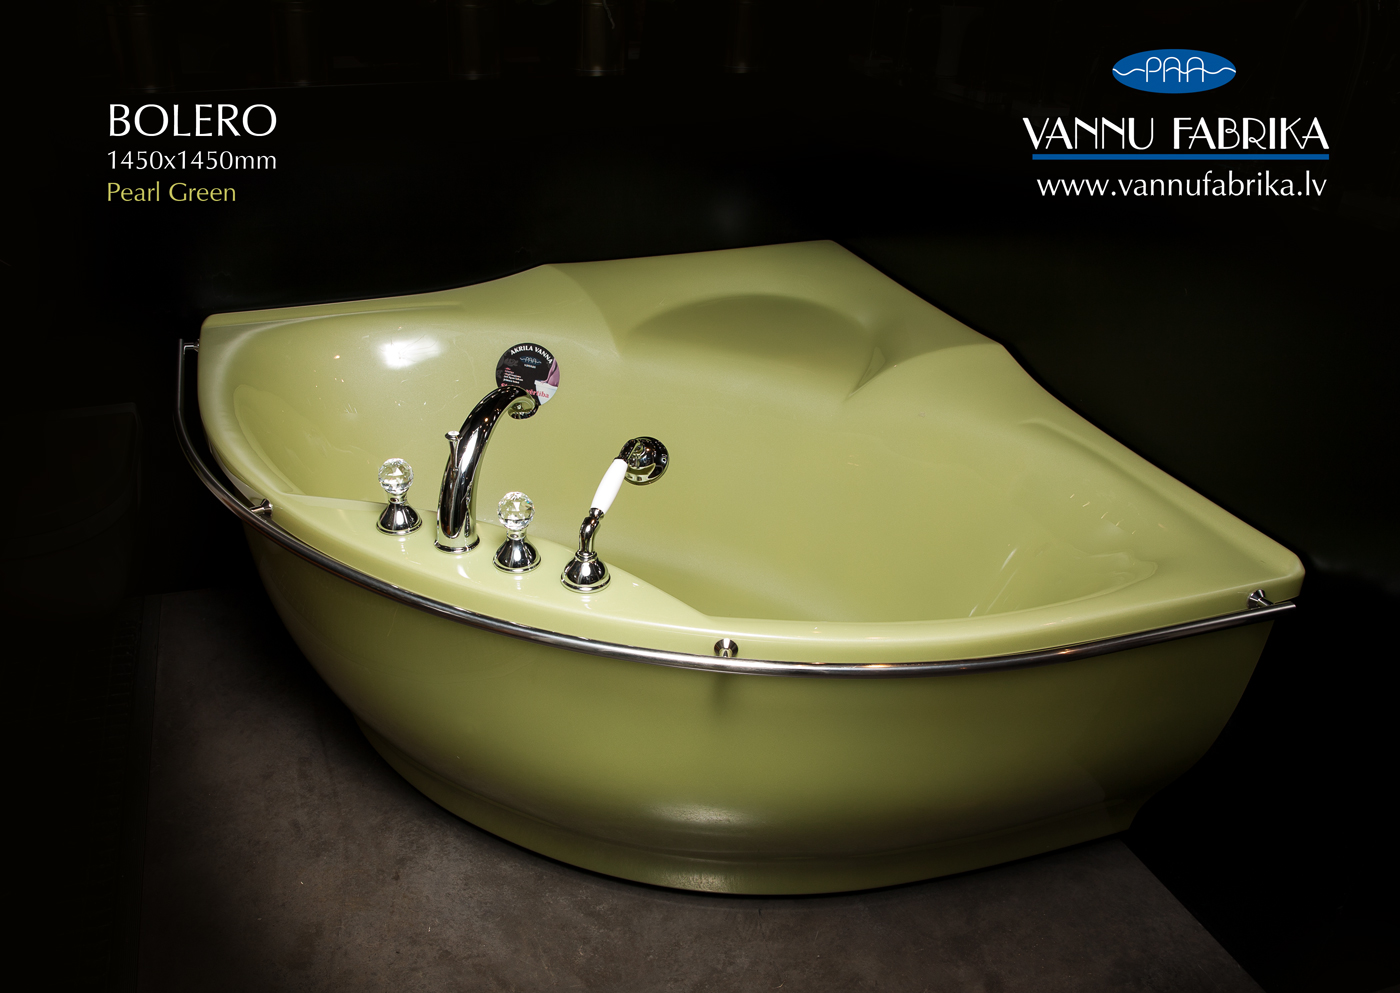 PAA Vannufabrikas salona izpārdošanā Bolero akrila vanna par lielisku cenu - ieskaties!